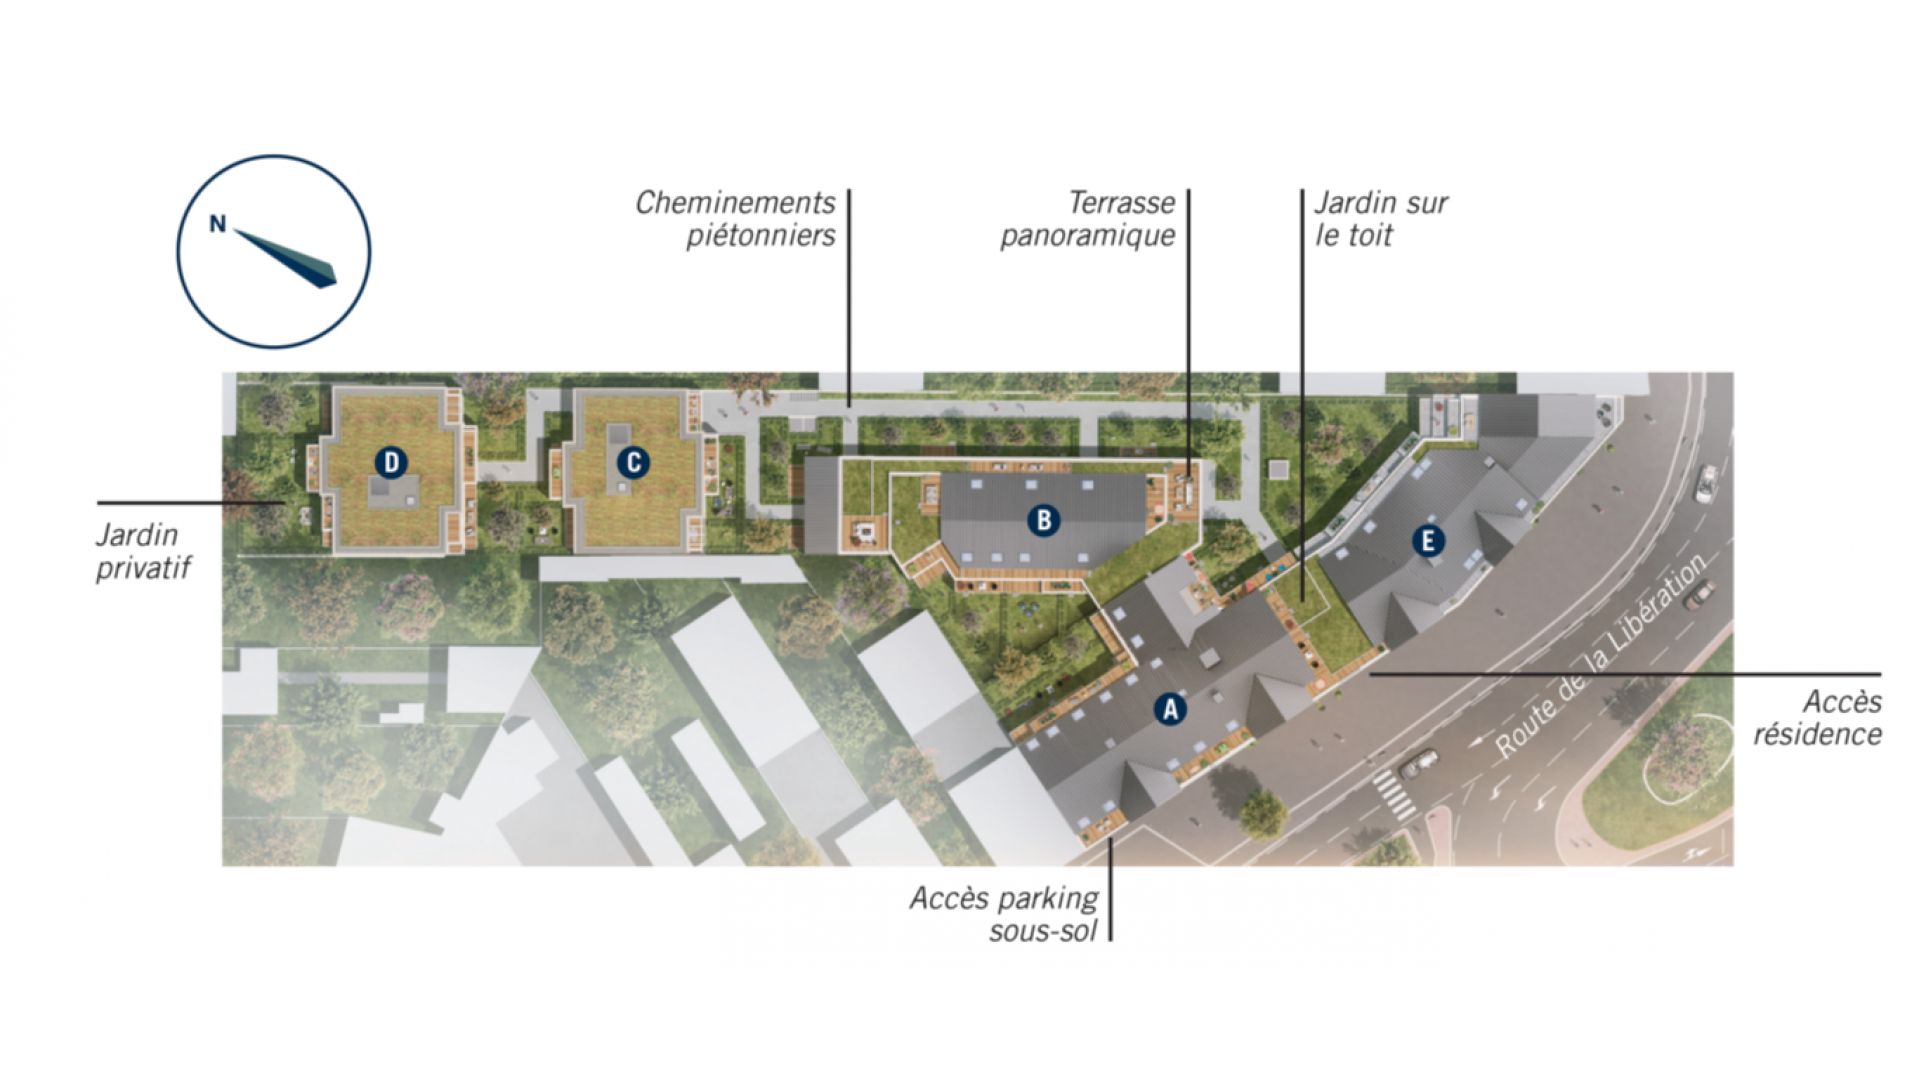 Greencity immobilier - achat appartements neufs du T1 au T4 - Résidence Opportunity - 64430 Chennevières-sur-Marne - plan de masse